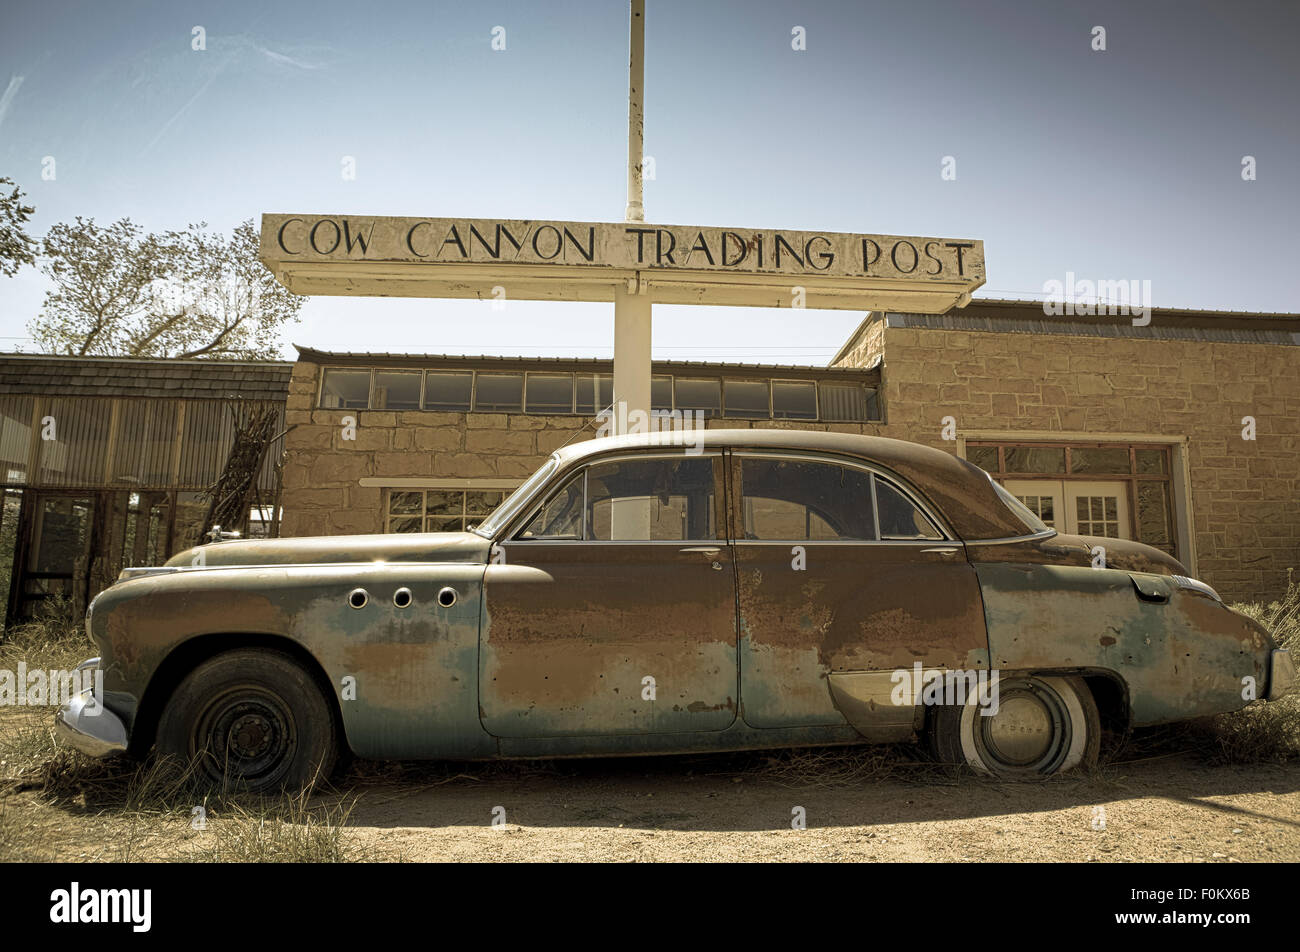 Vieille voiture abandonnée dans les rochers dans l'Utah et de l'image aux couleurs Banque D'Images